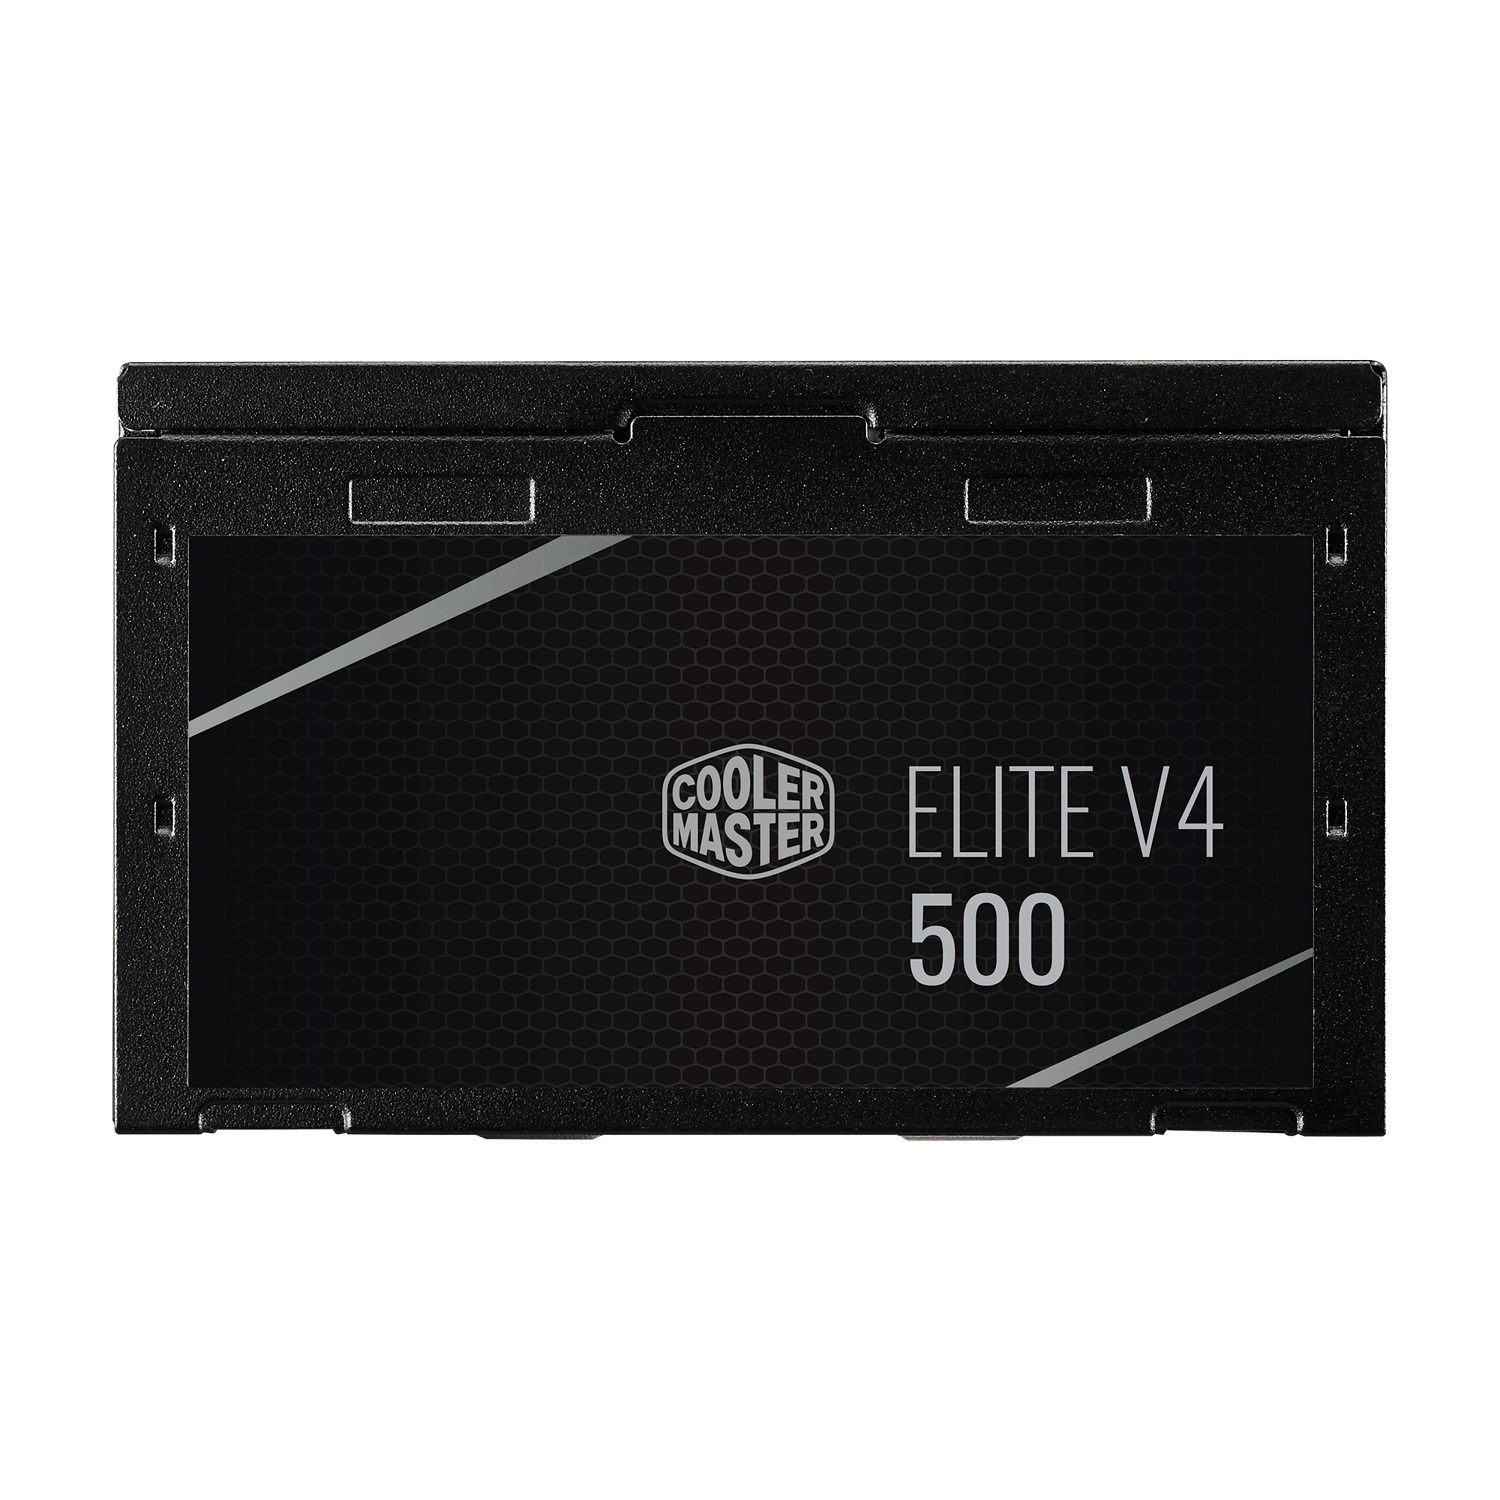 منبع تغذیه کامپیوتر کولر مستر مدل ELITE 500 230V V4